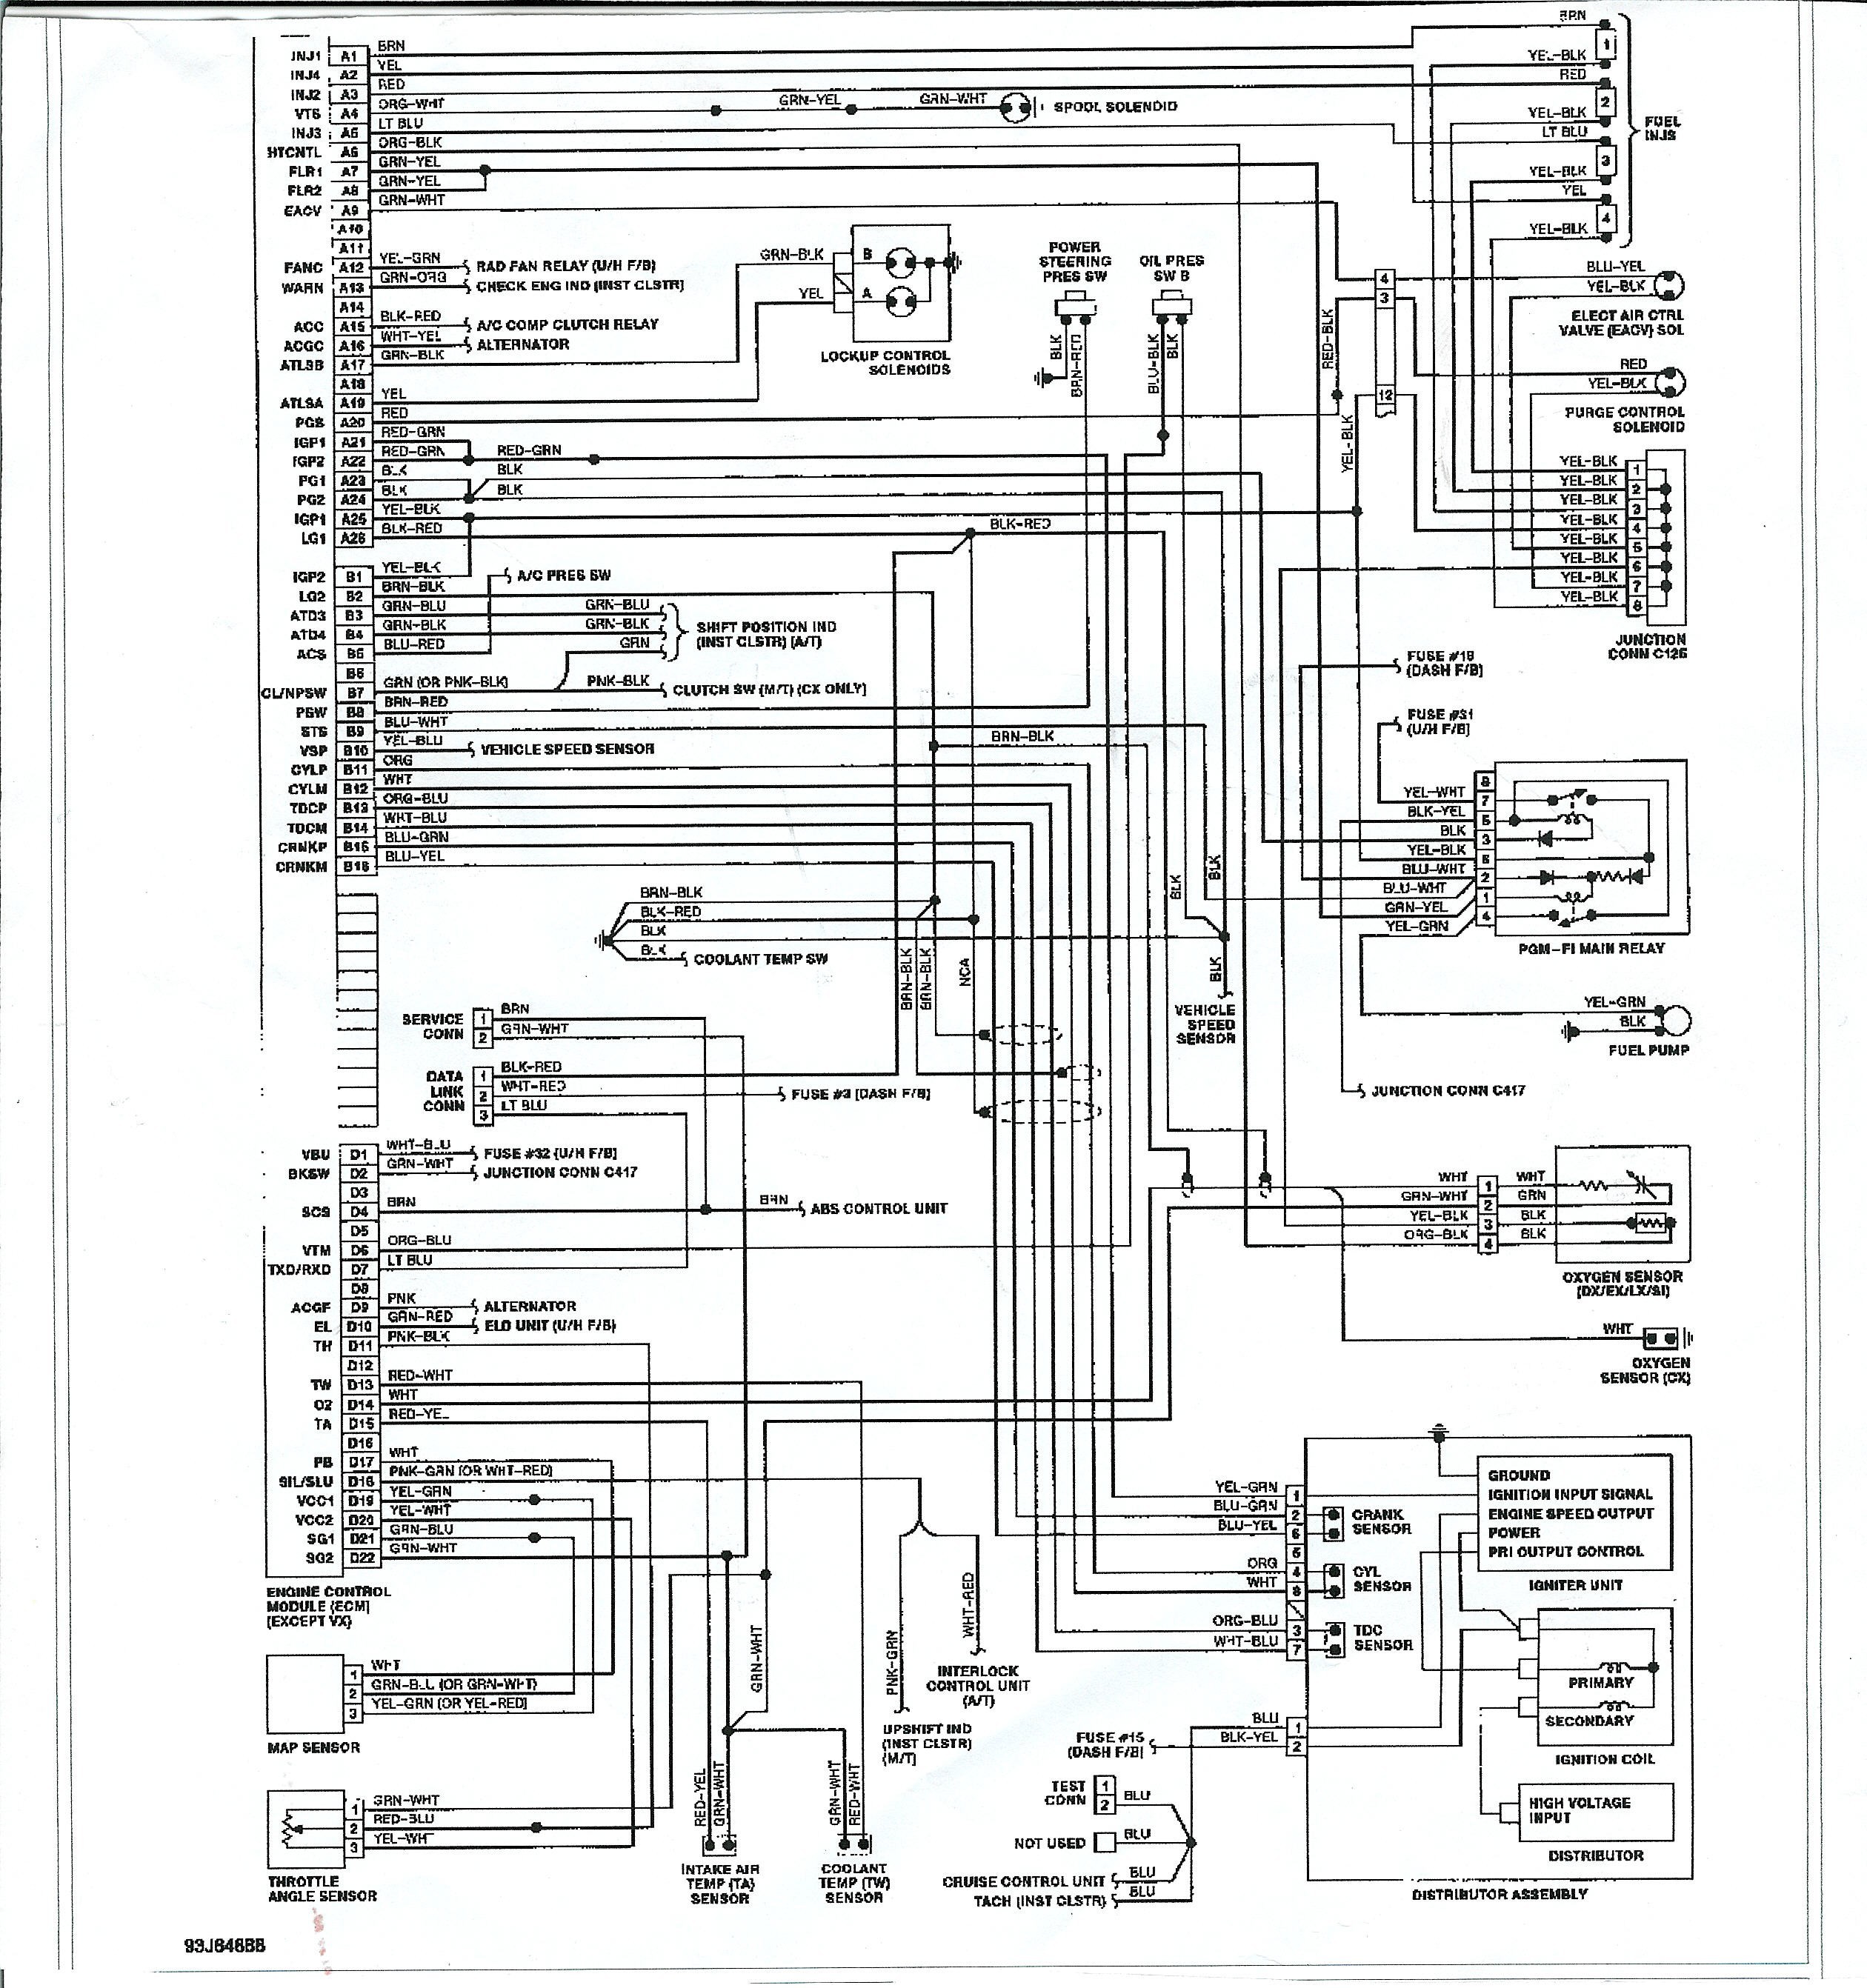 1998 Honda Civic Ex Wiring Diagram from detoxicrecenze.com